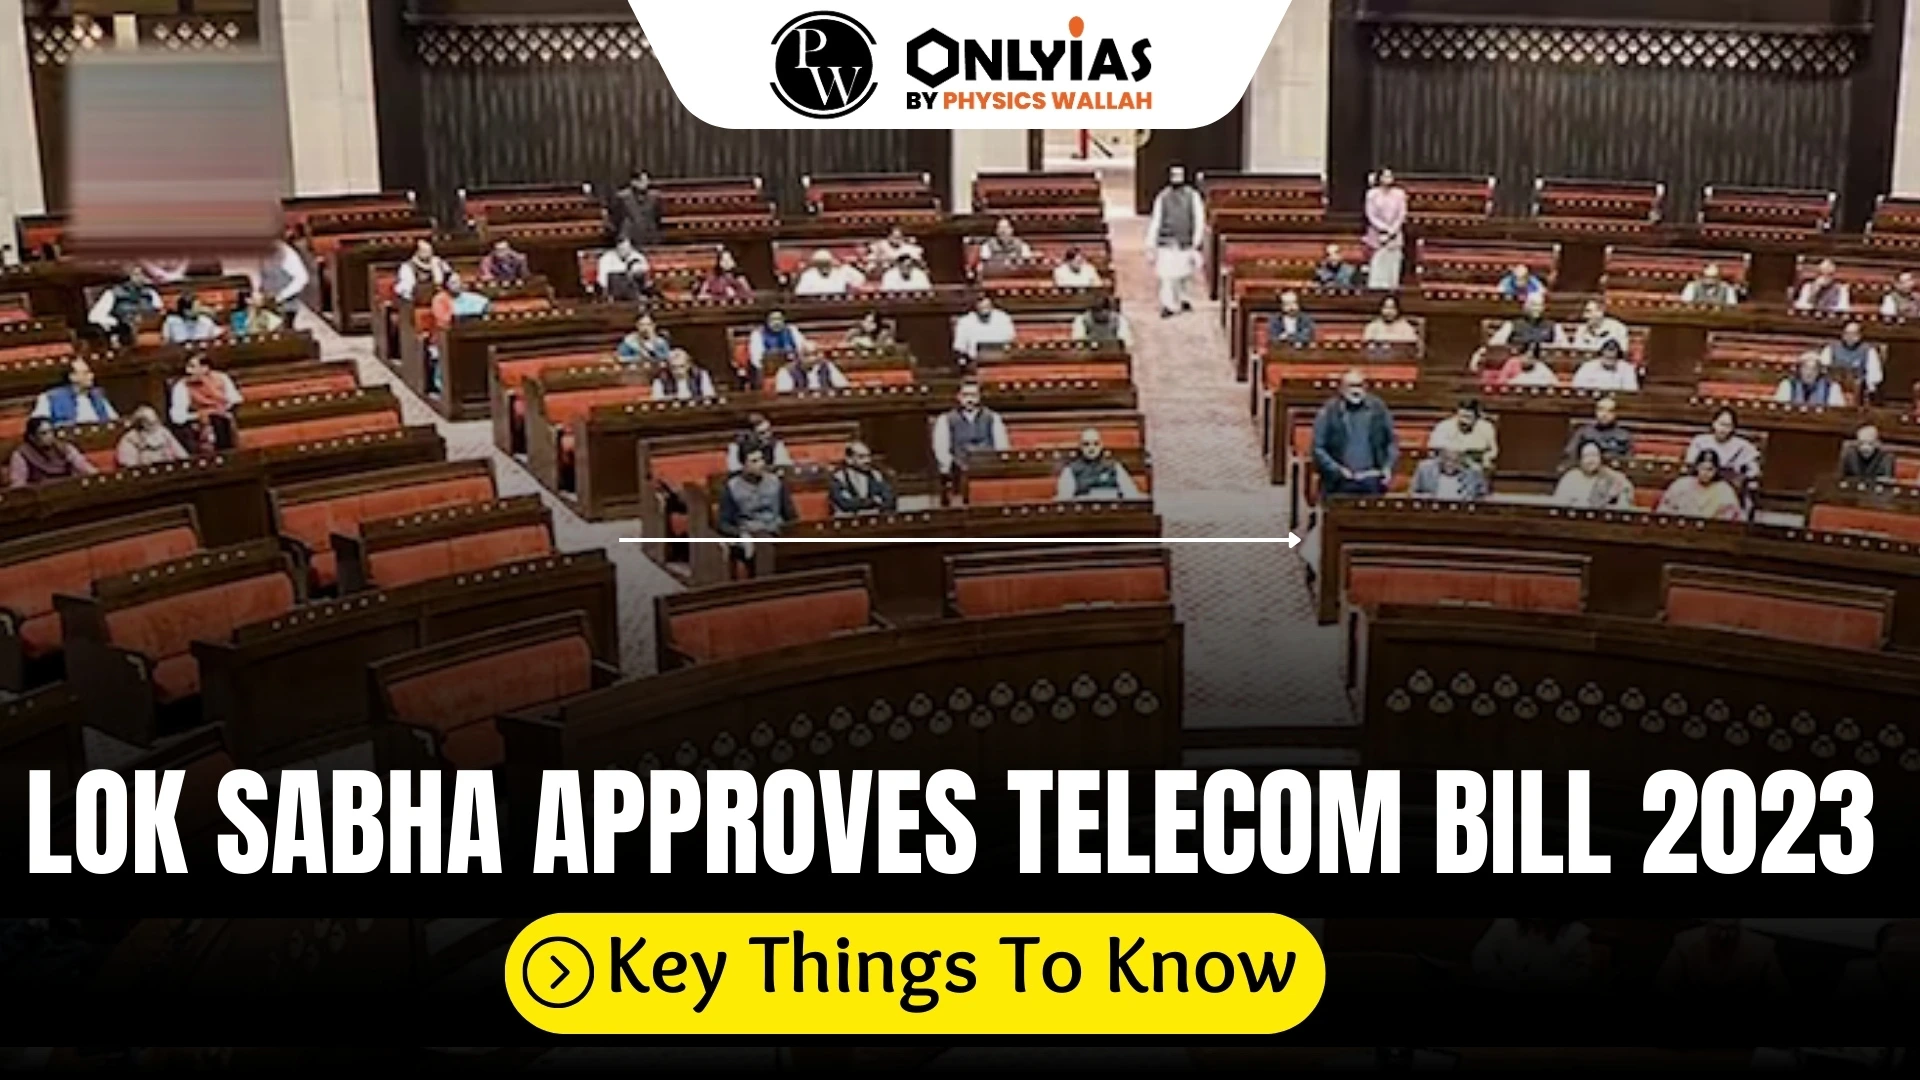 Lok Sabha Approves Telecom Bill 2023 Key Things To Know Pwonlyias